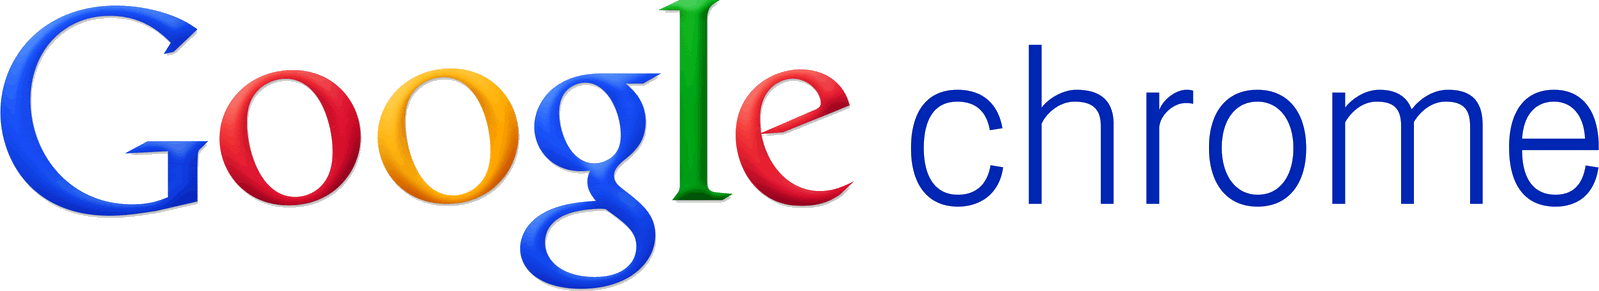 Chrome Google Logo PNG imagen Transparente